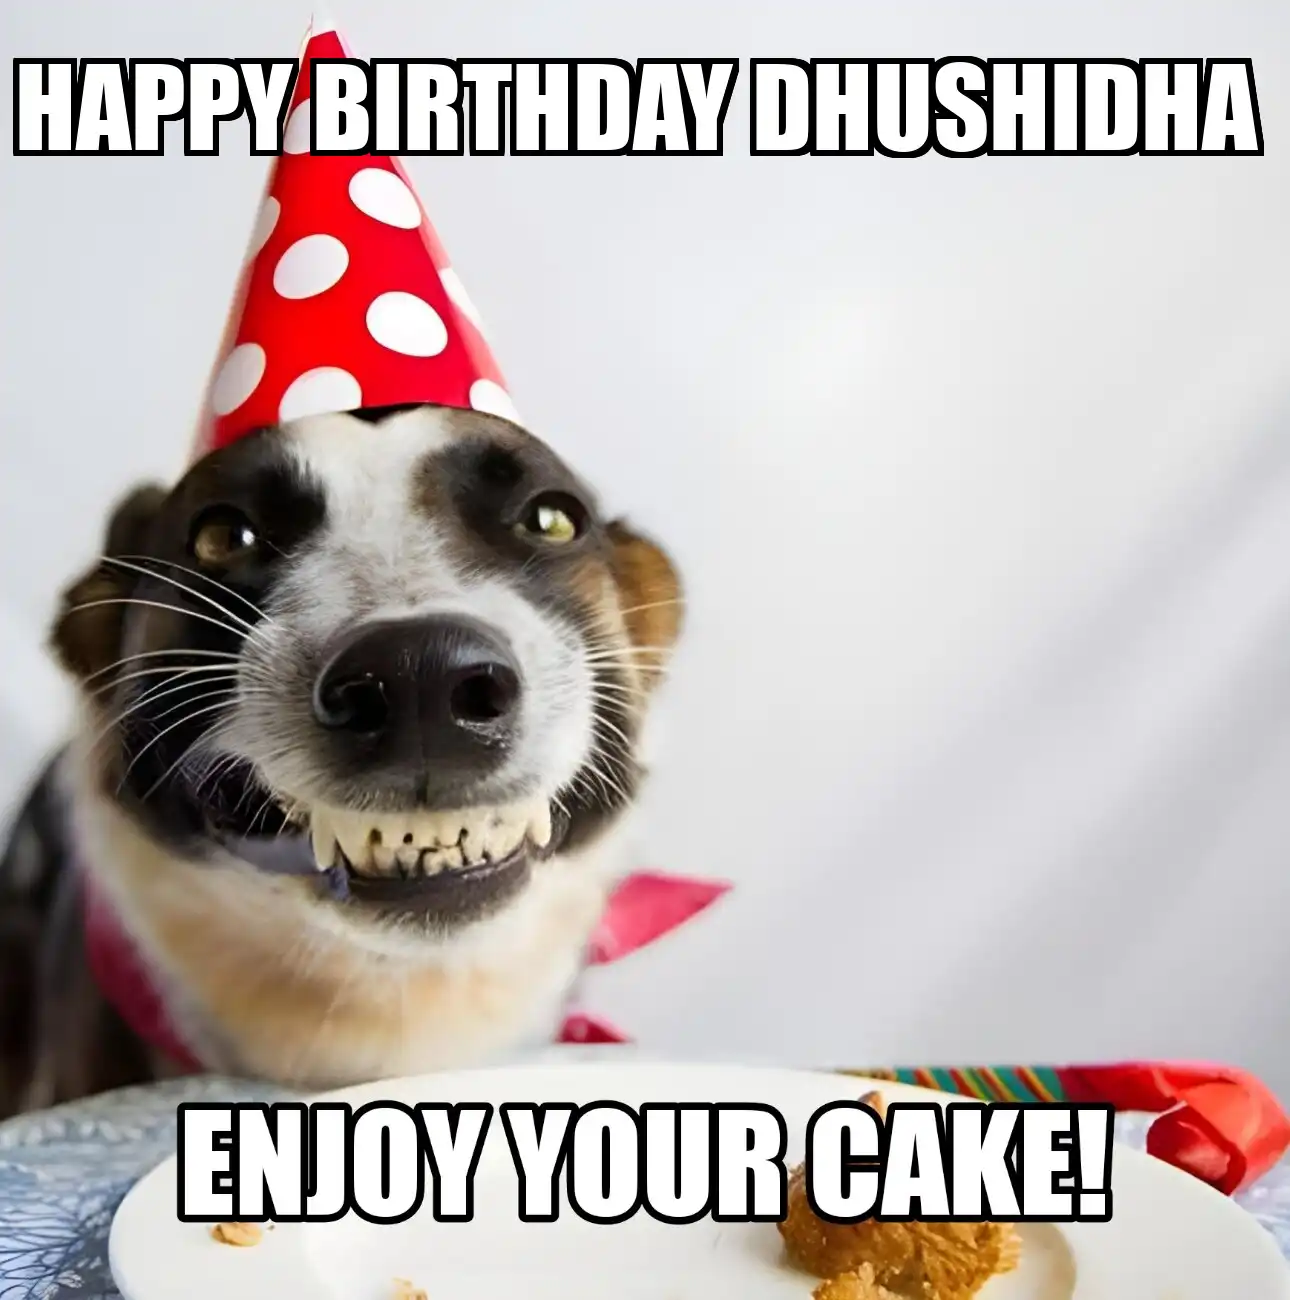 Happy Birthday Dhushidha Enjoy Your Cake Dog Meme